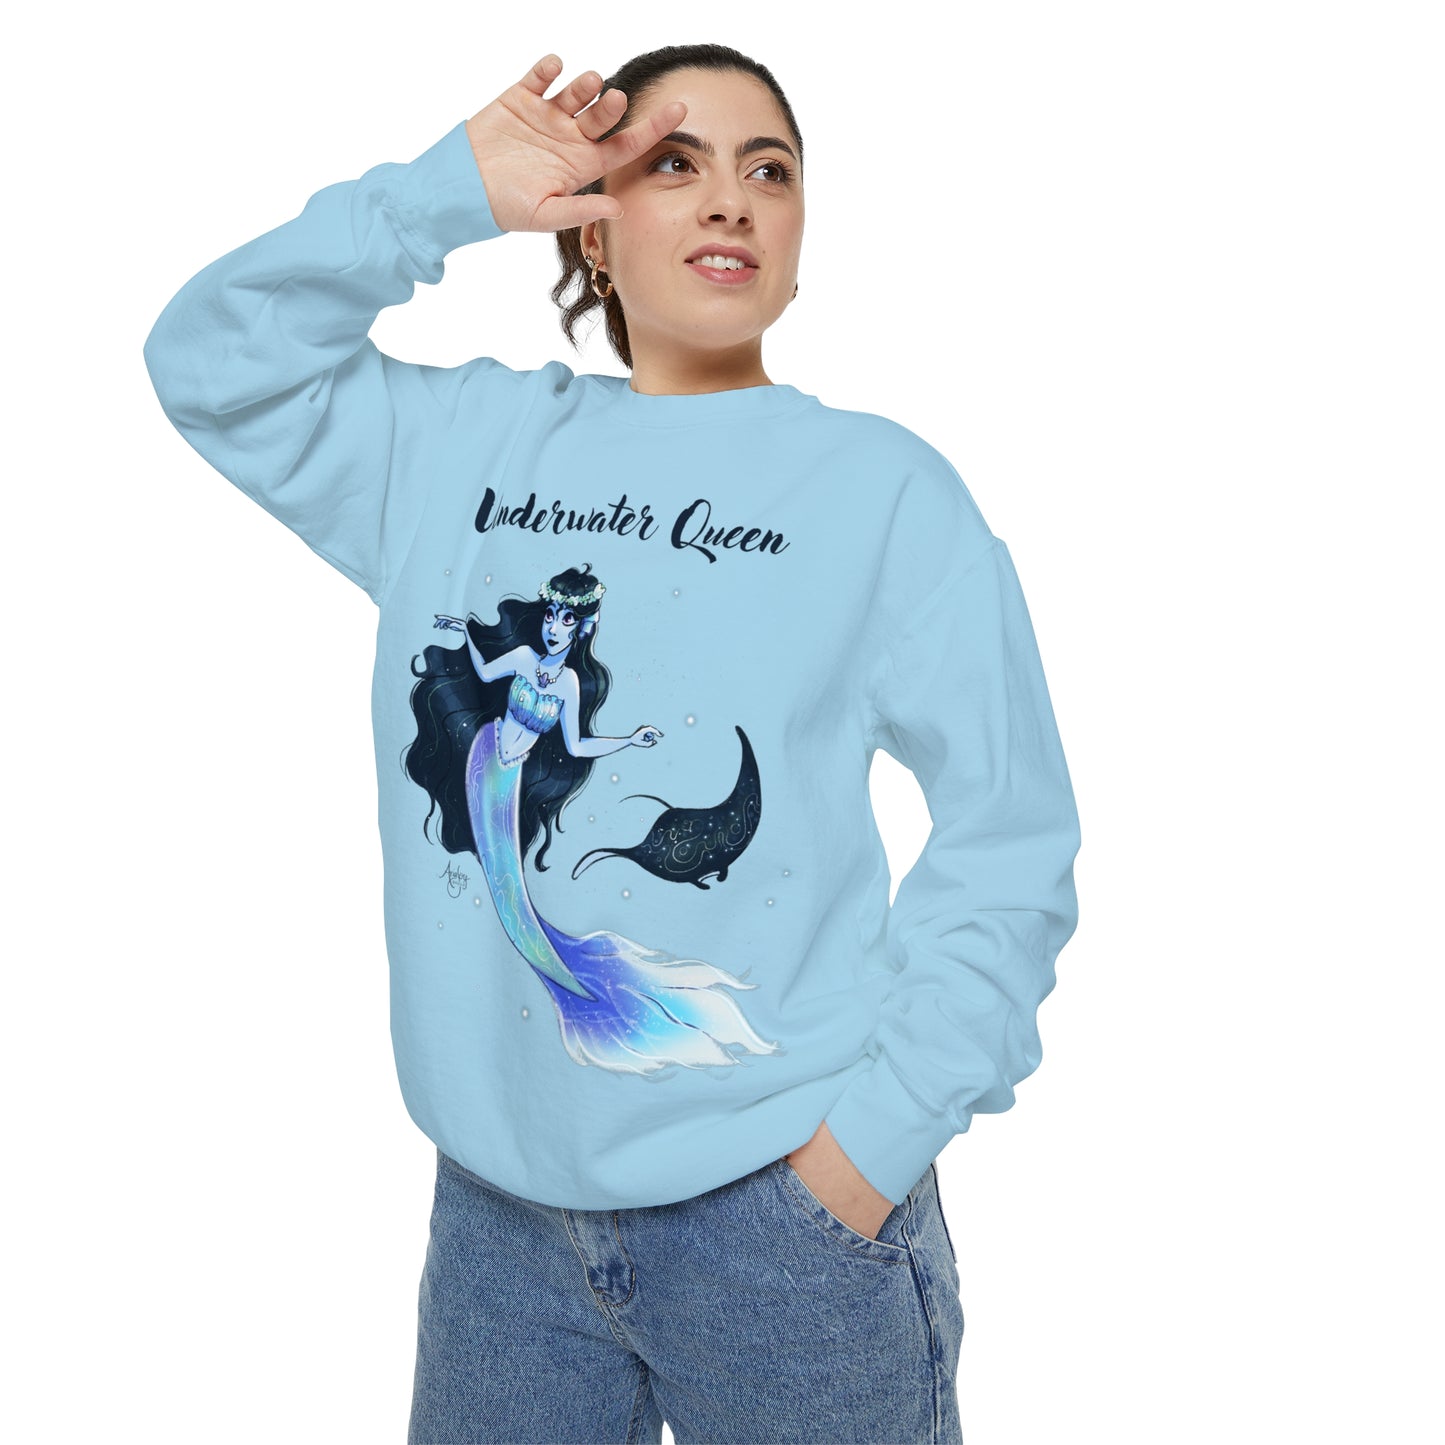 Underwater Queen Crewneck Sweatshirt